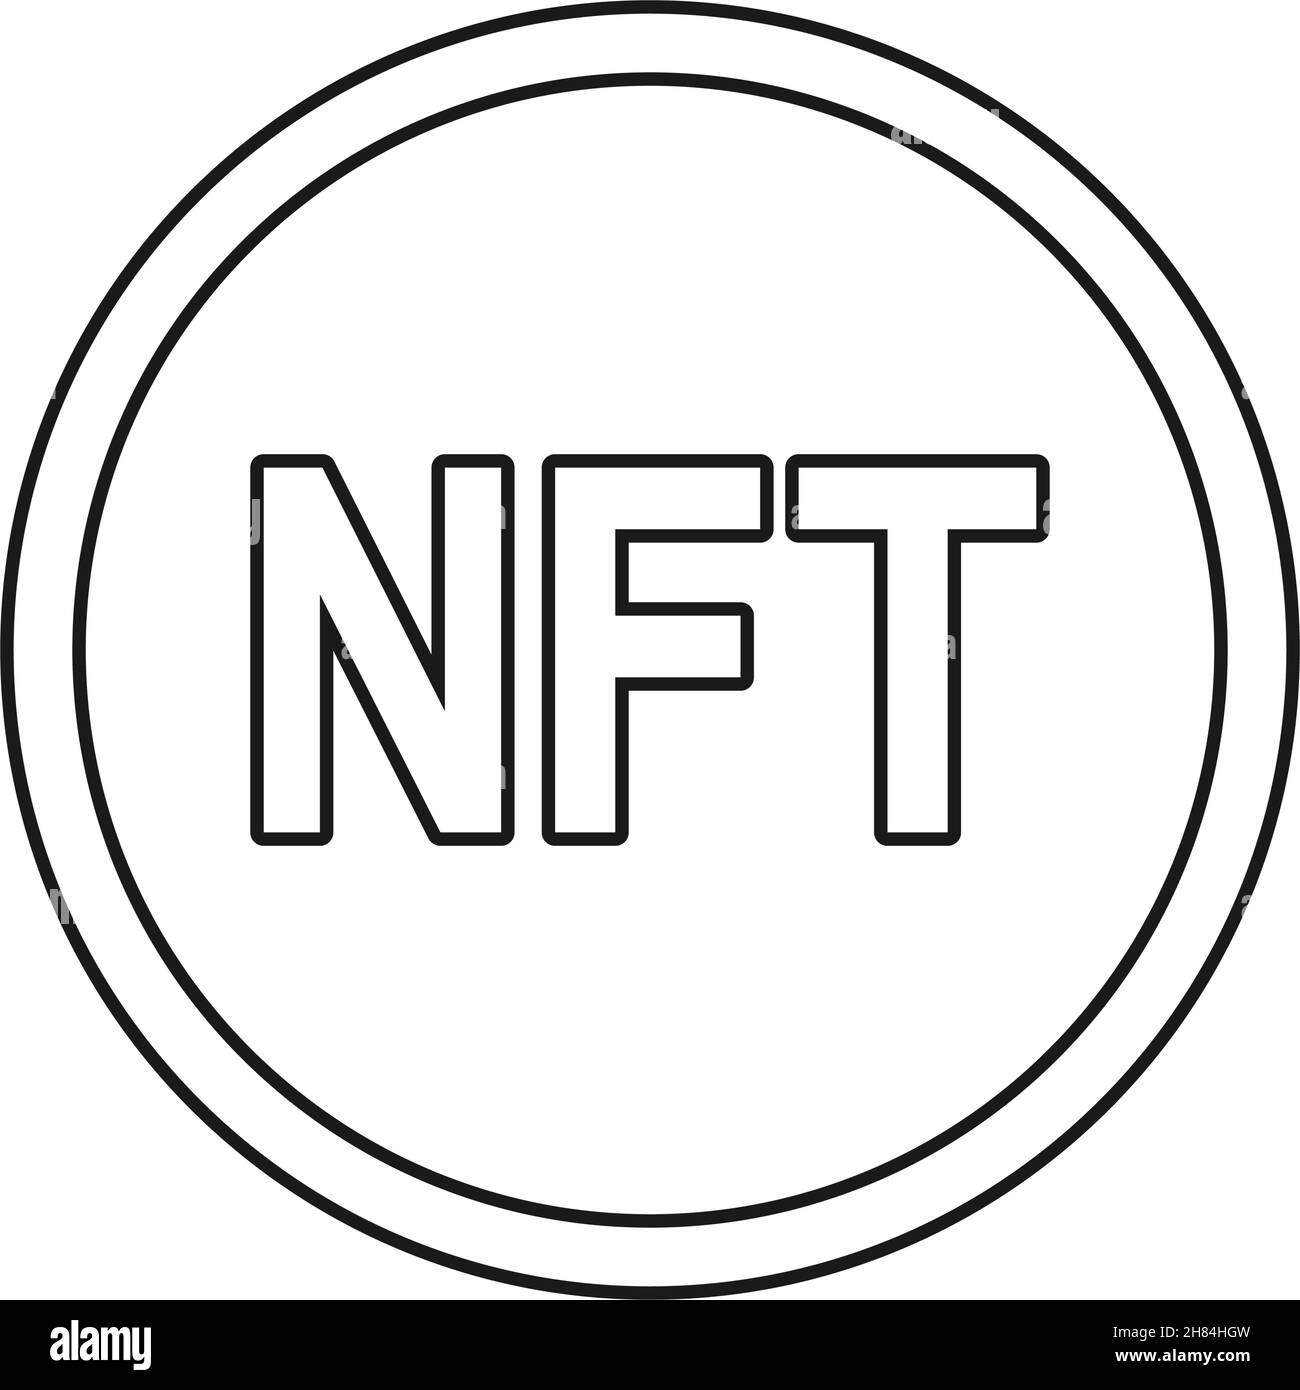 NFT coin or non-fungible token in outline vector icon Stock Vector